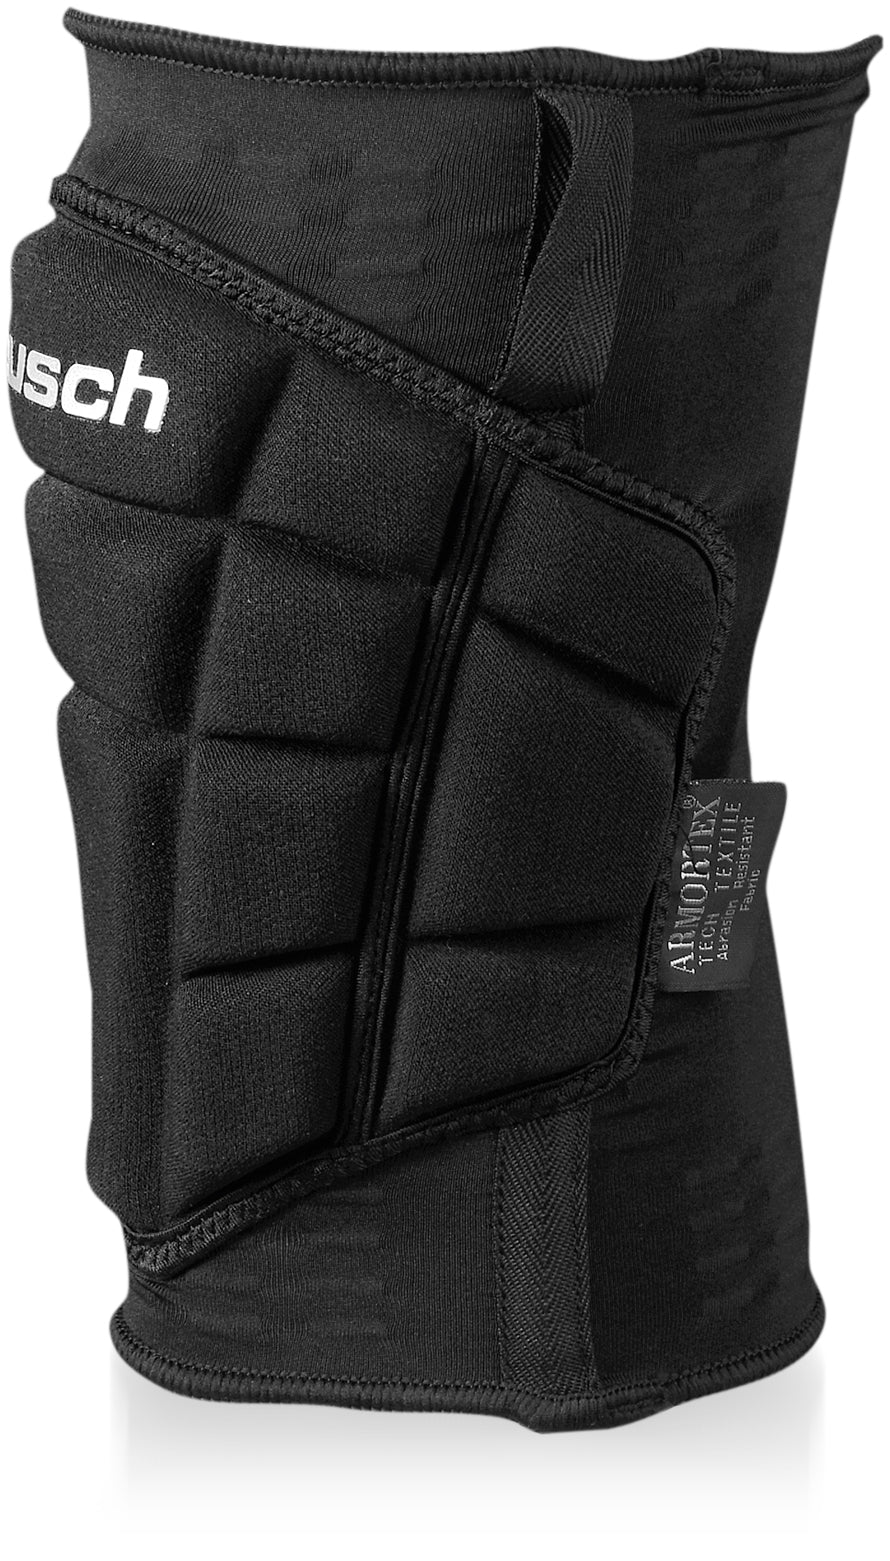 36 77 ReuschSoccer Guard Reusch – Ultimate Knee - 500